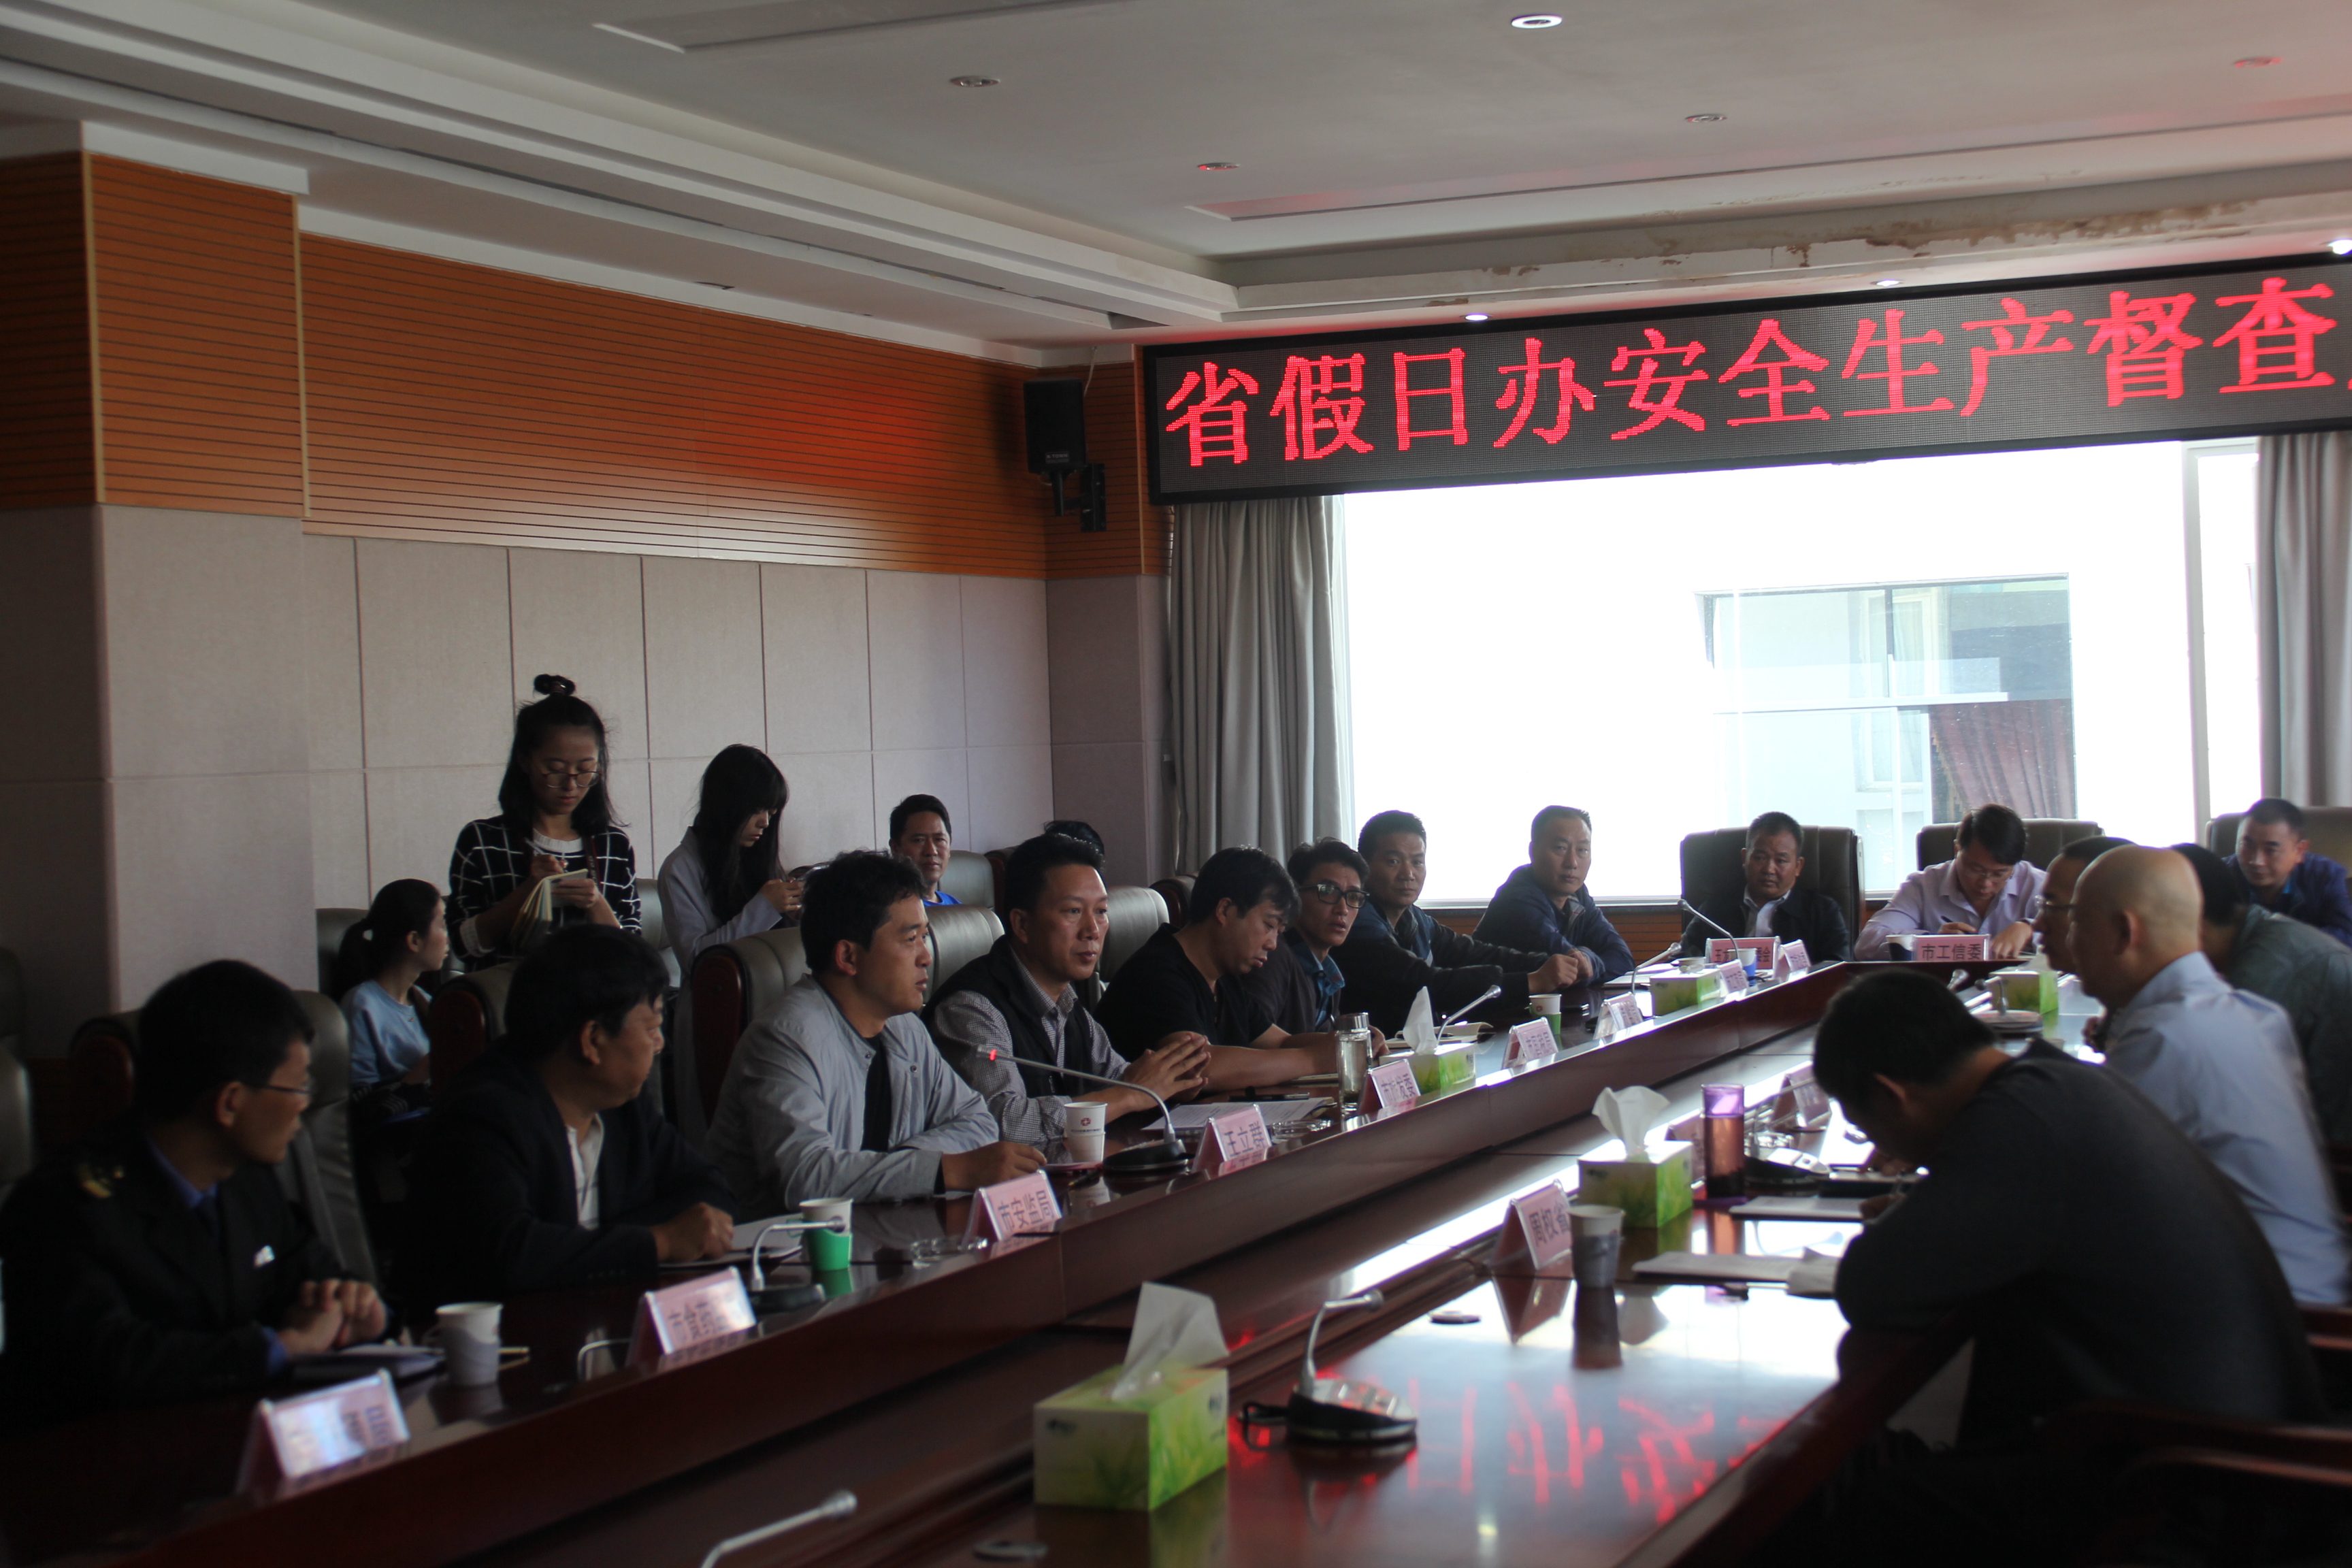 26日起,丽江六部门将开展节前旅游安全联合大